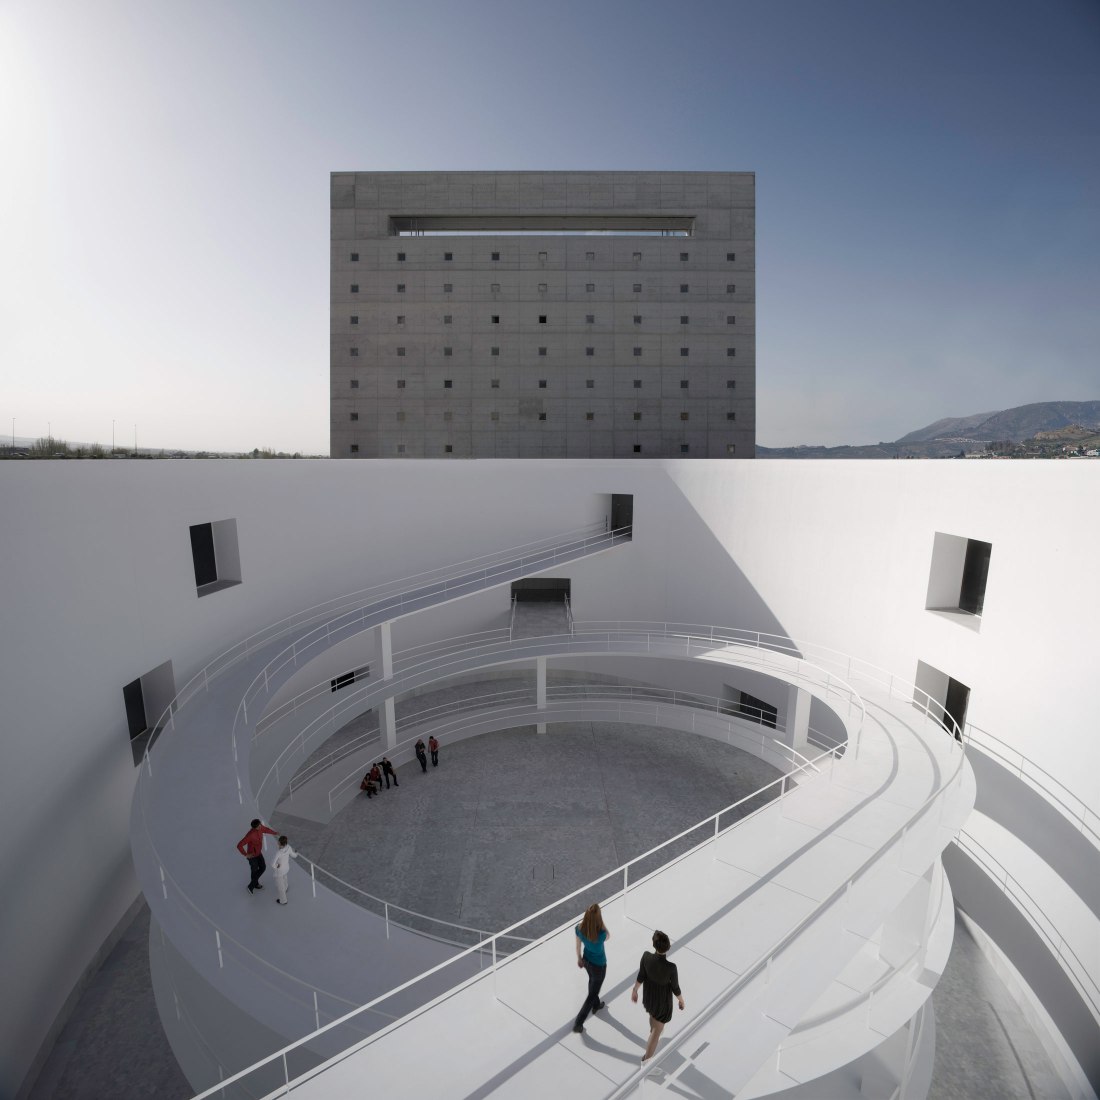 Museum of Memory of Andalusia, in Avenida de las Ciencias, Granada, Spain, by Alberto Campo Baeza Architects. Photograph © Javier Callejas